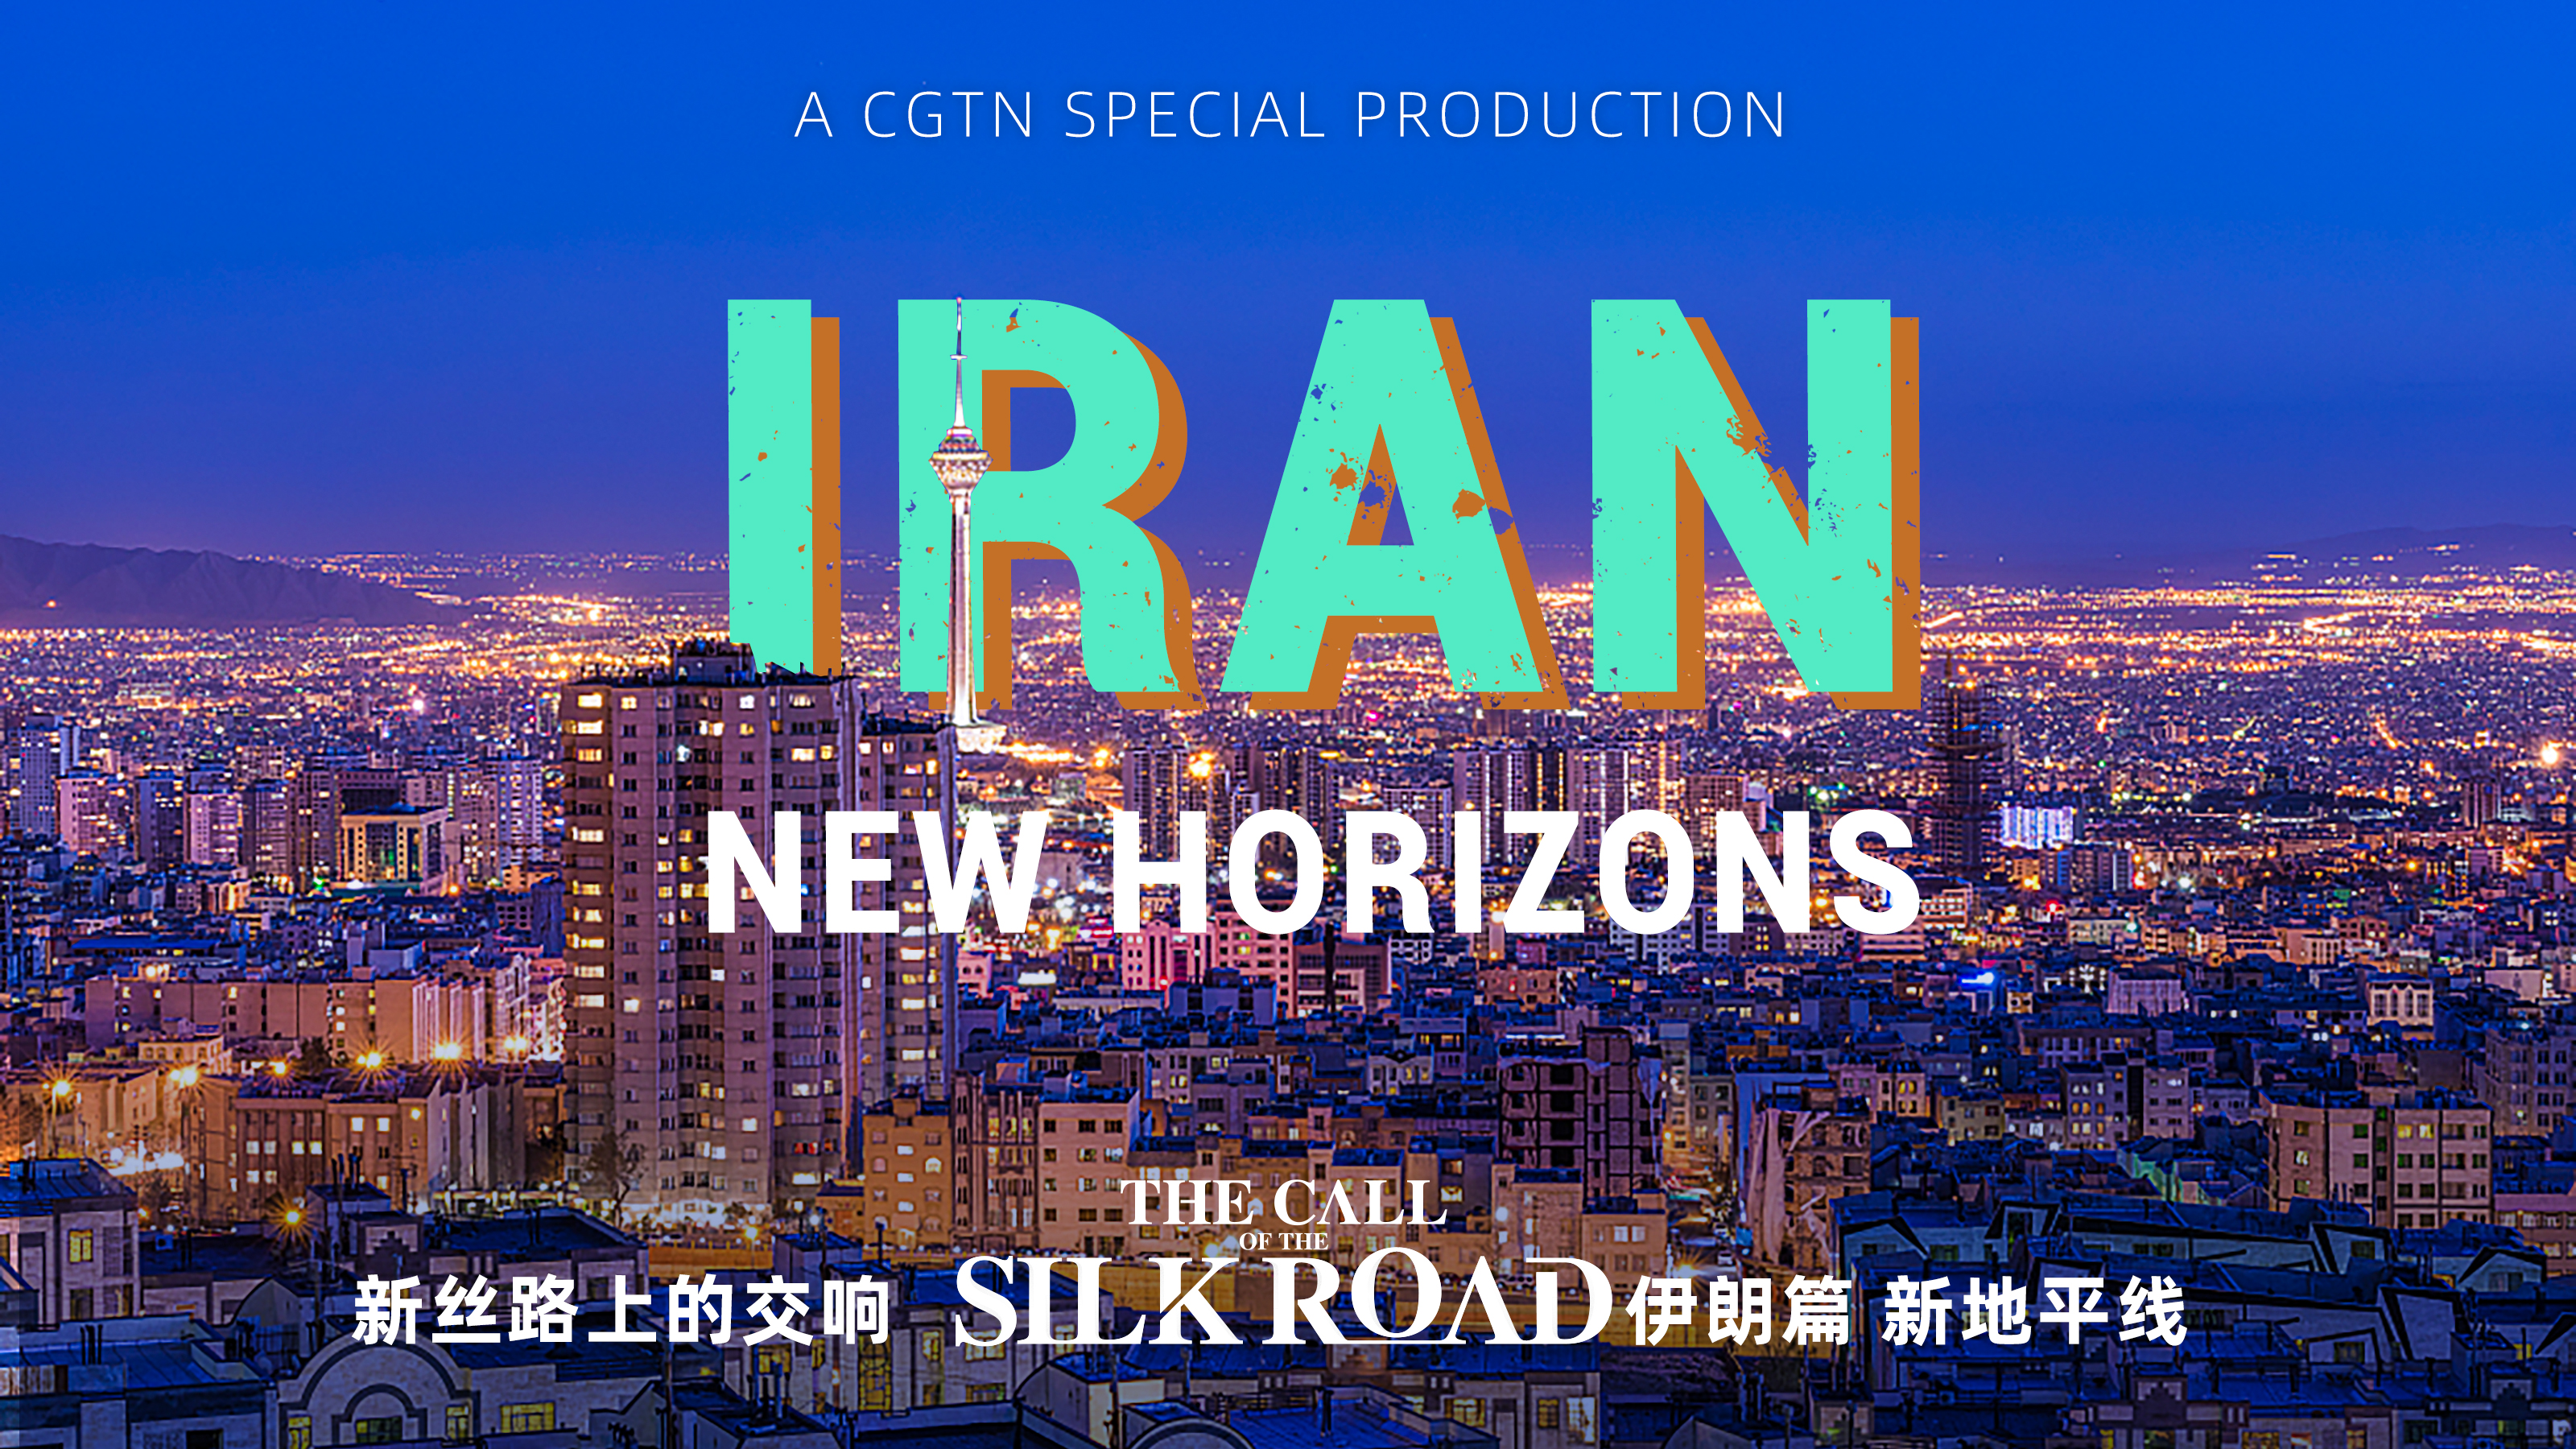 تهیه و پخش فیلم مستند «نگاهی به ایران واقعی» در شبکه تلویزیونی سی جی تی وی چینا